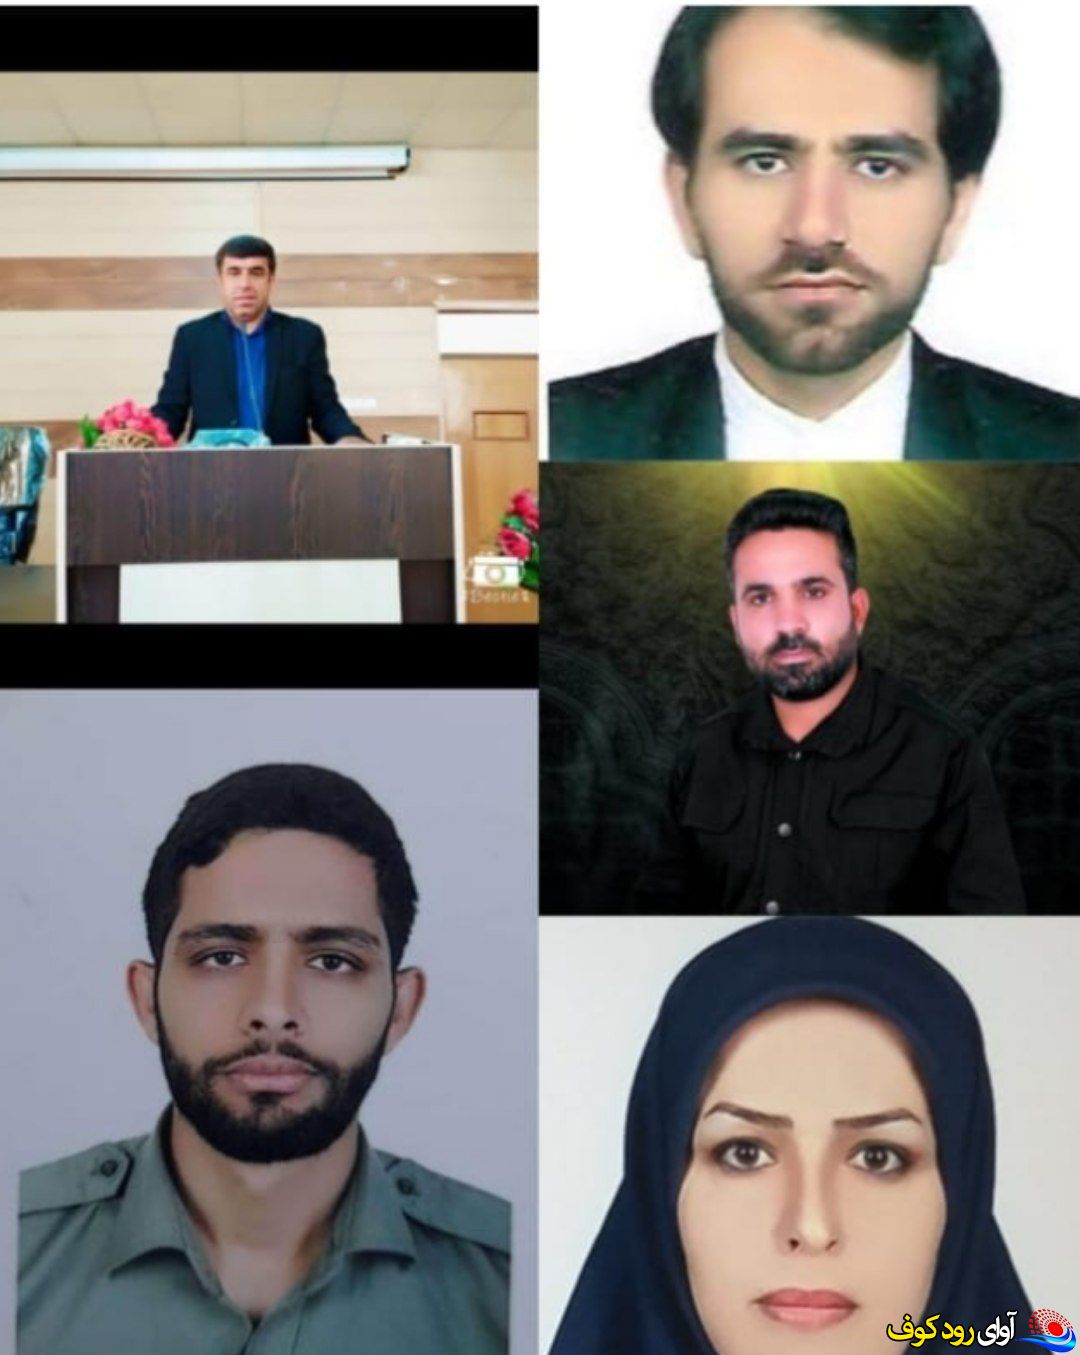 انتخابات هیئت رئیسه هیئات مذهبی شهرستان بهمئی برگزار شد